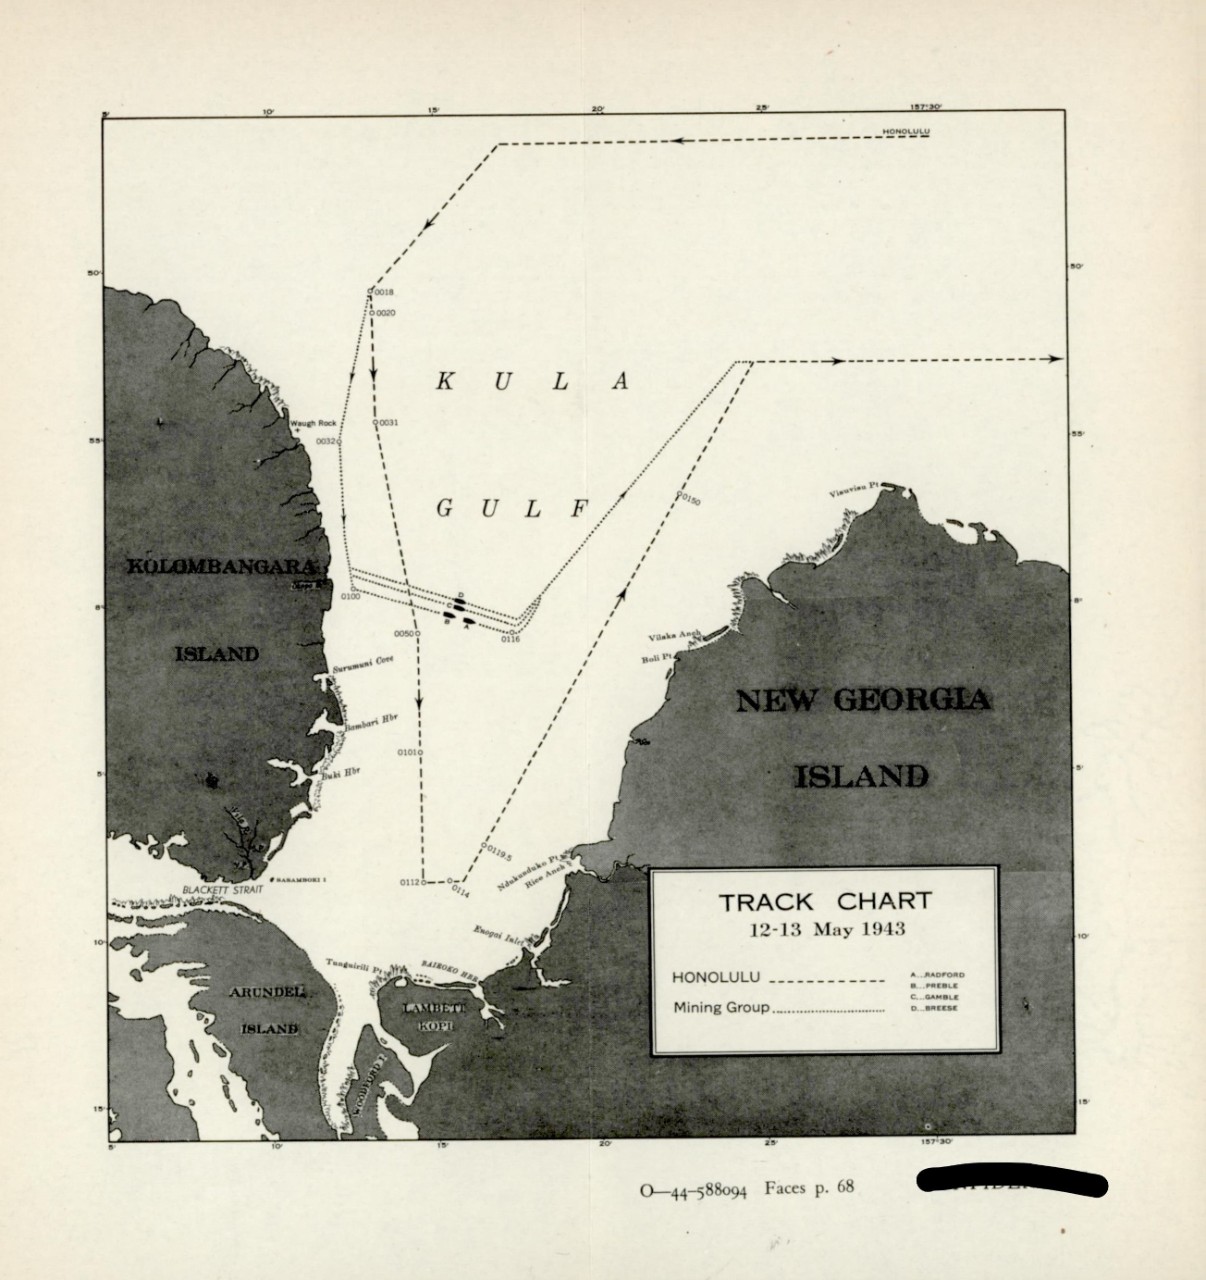 Track Chart 12-13 May 1943, New Georgia Island